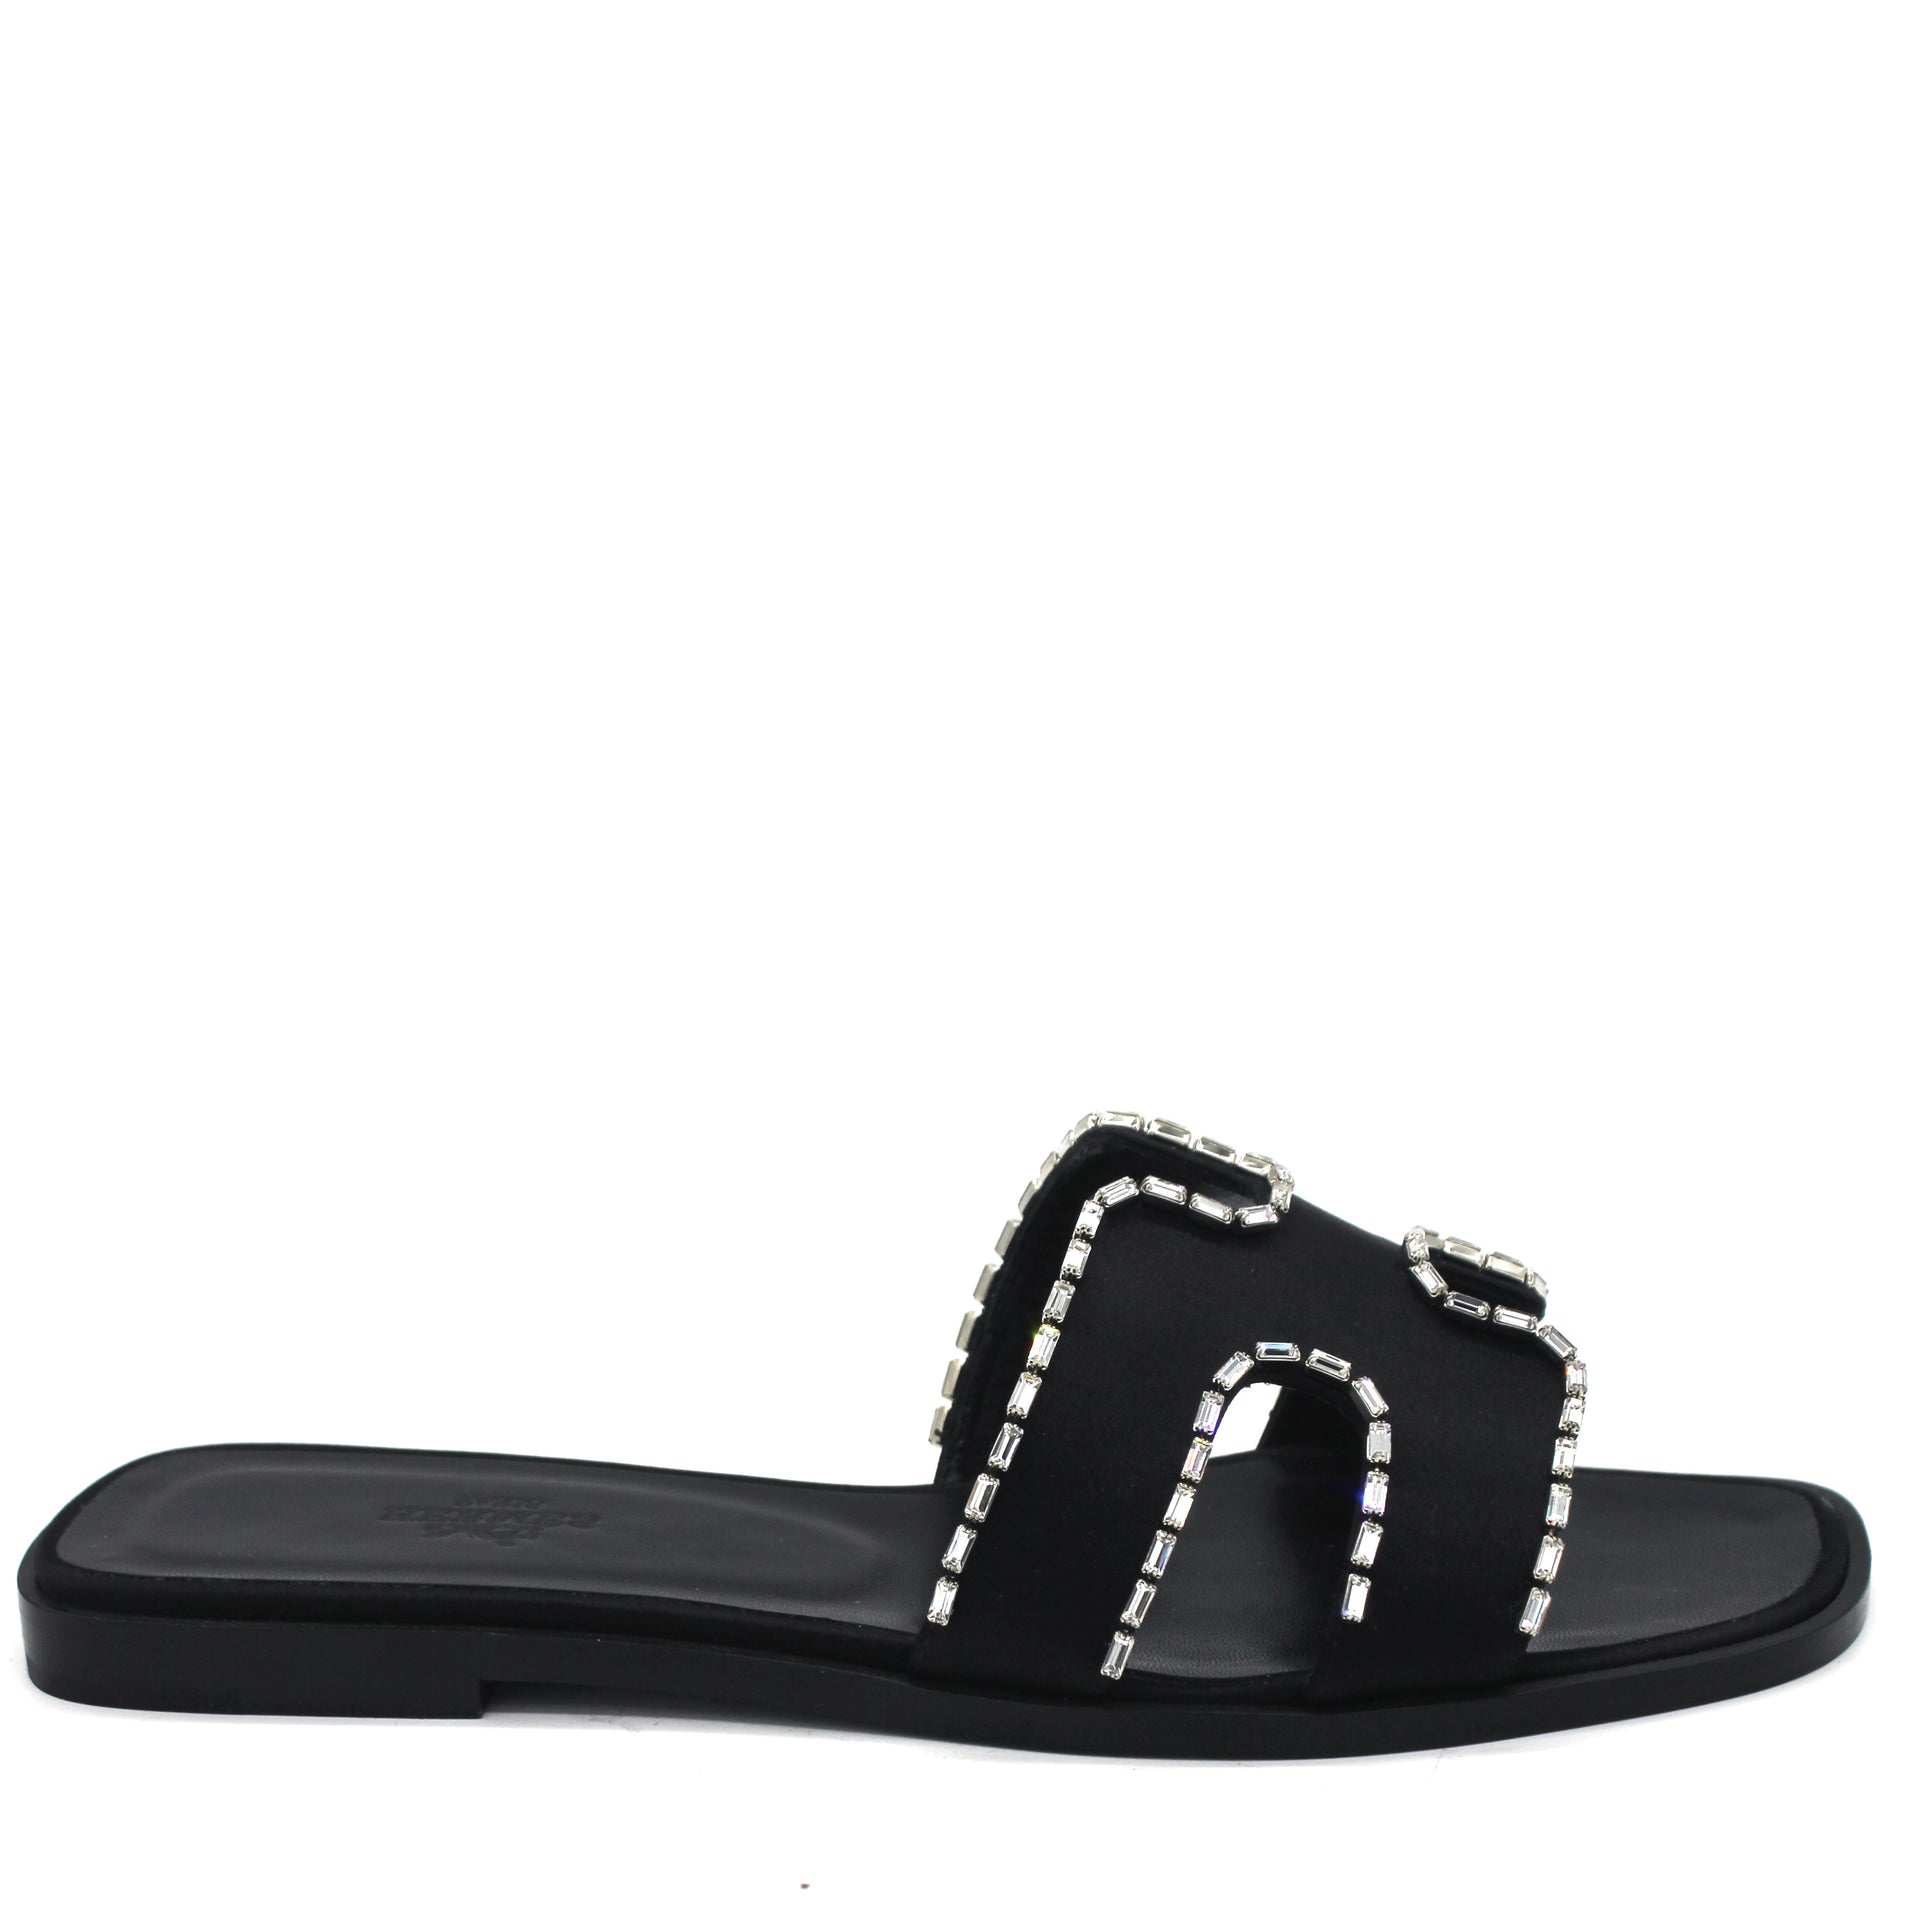 Black Satin and Strass Crystal Oran H Slide Sandals 38